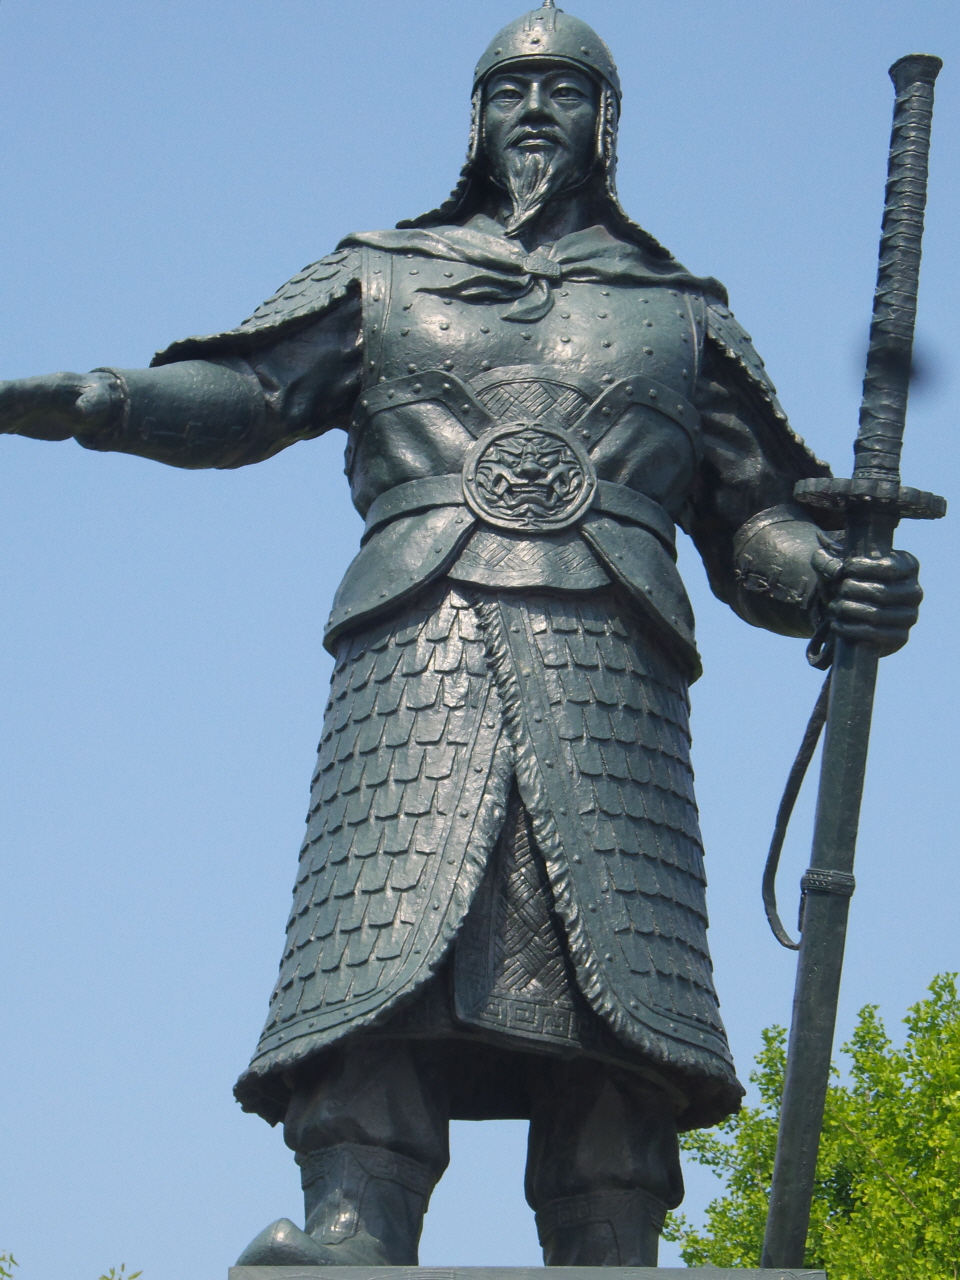 유달산 충무공 이순신 장군 동상은 큰 칼을 빼려는 자세로 일본을 바라보며 조금 기울어져 있다. 이는 죽어서도 나라를 지키고 일본의 기운을 누르려는 뜻이 숨어 있다고 한다. 